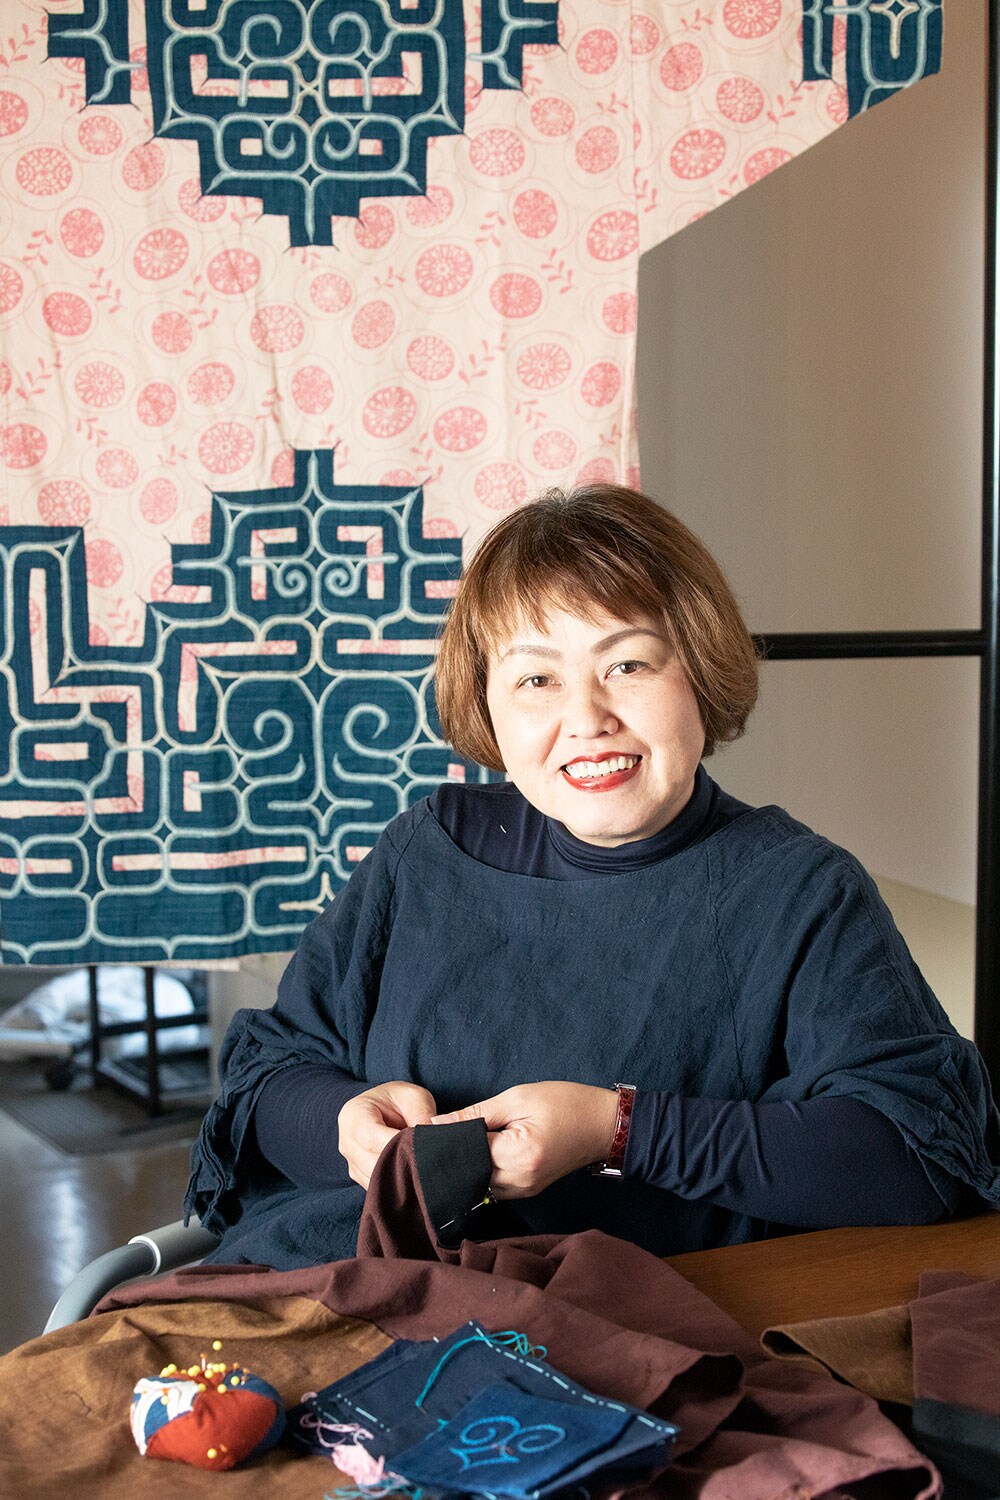 母の雪子さんからアットゥシ織りを学んだ関根真紀さん。女性としては珍しく、二風谷イタの制作も手がけている作家で、アイヌ伝統の技法と意匠をベースにしながら、新しいスタイルの作品作りにも挑戦している。